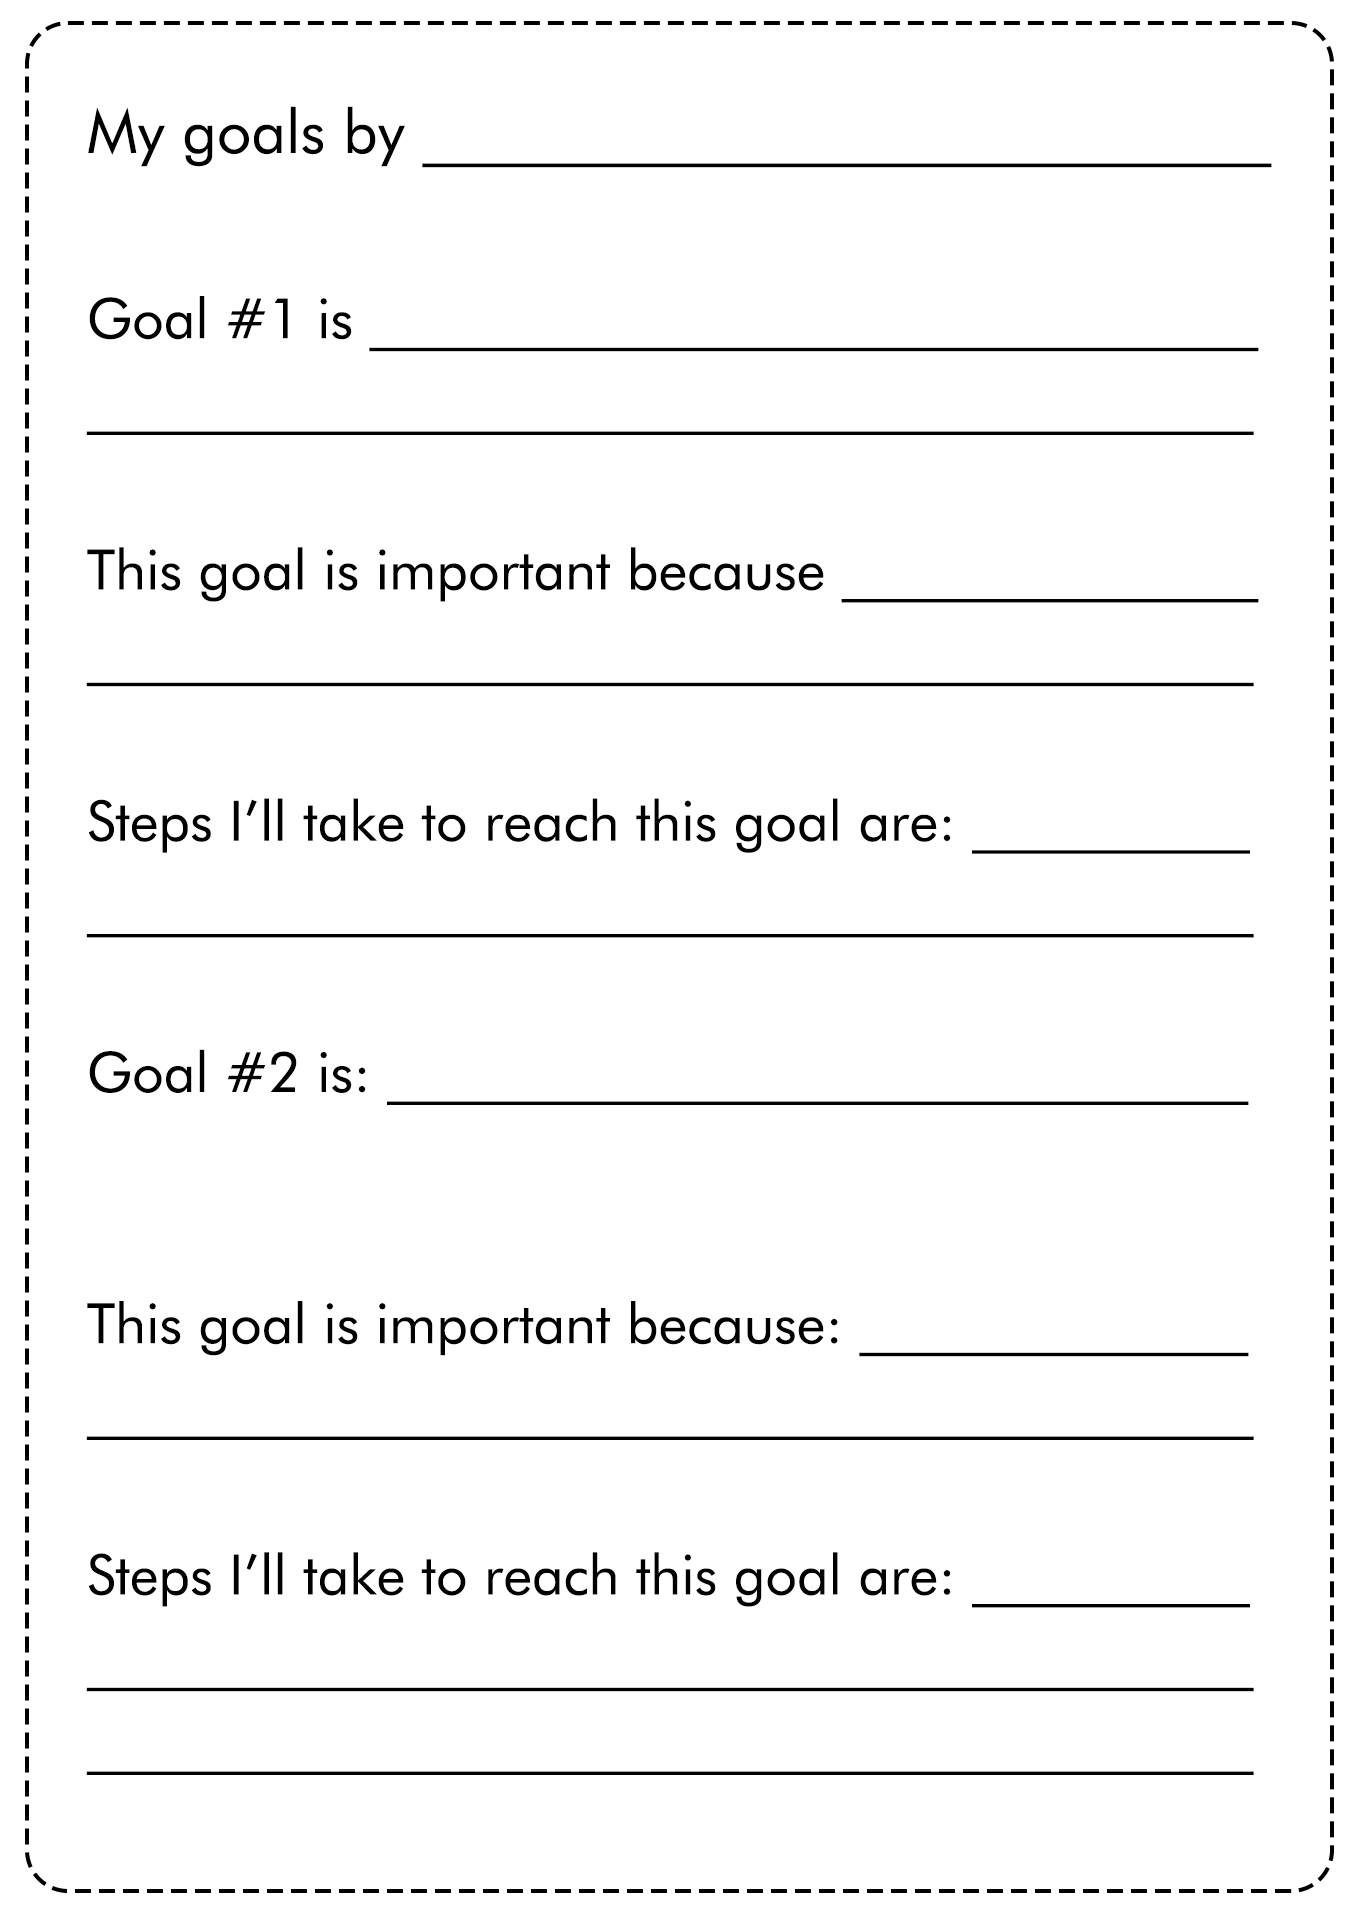 School Goals Worksheet Image